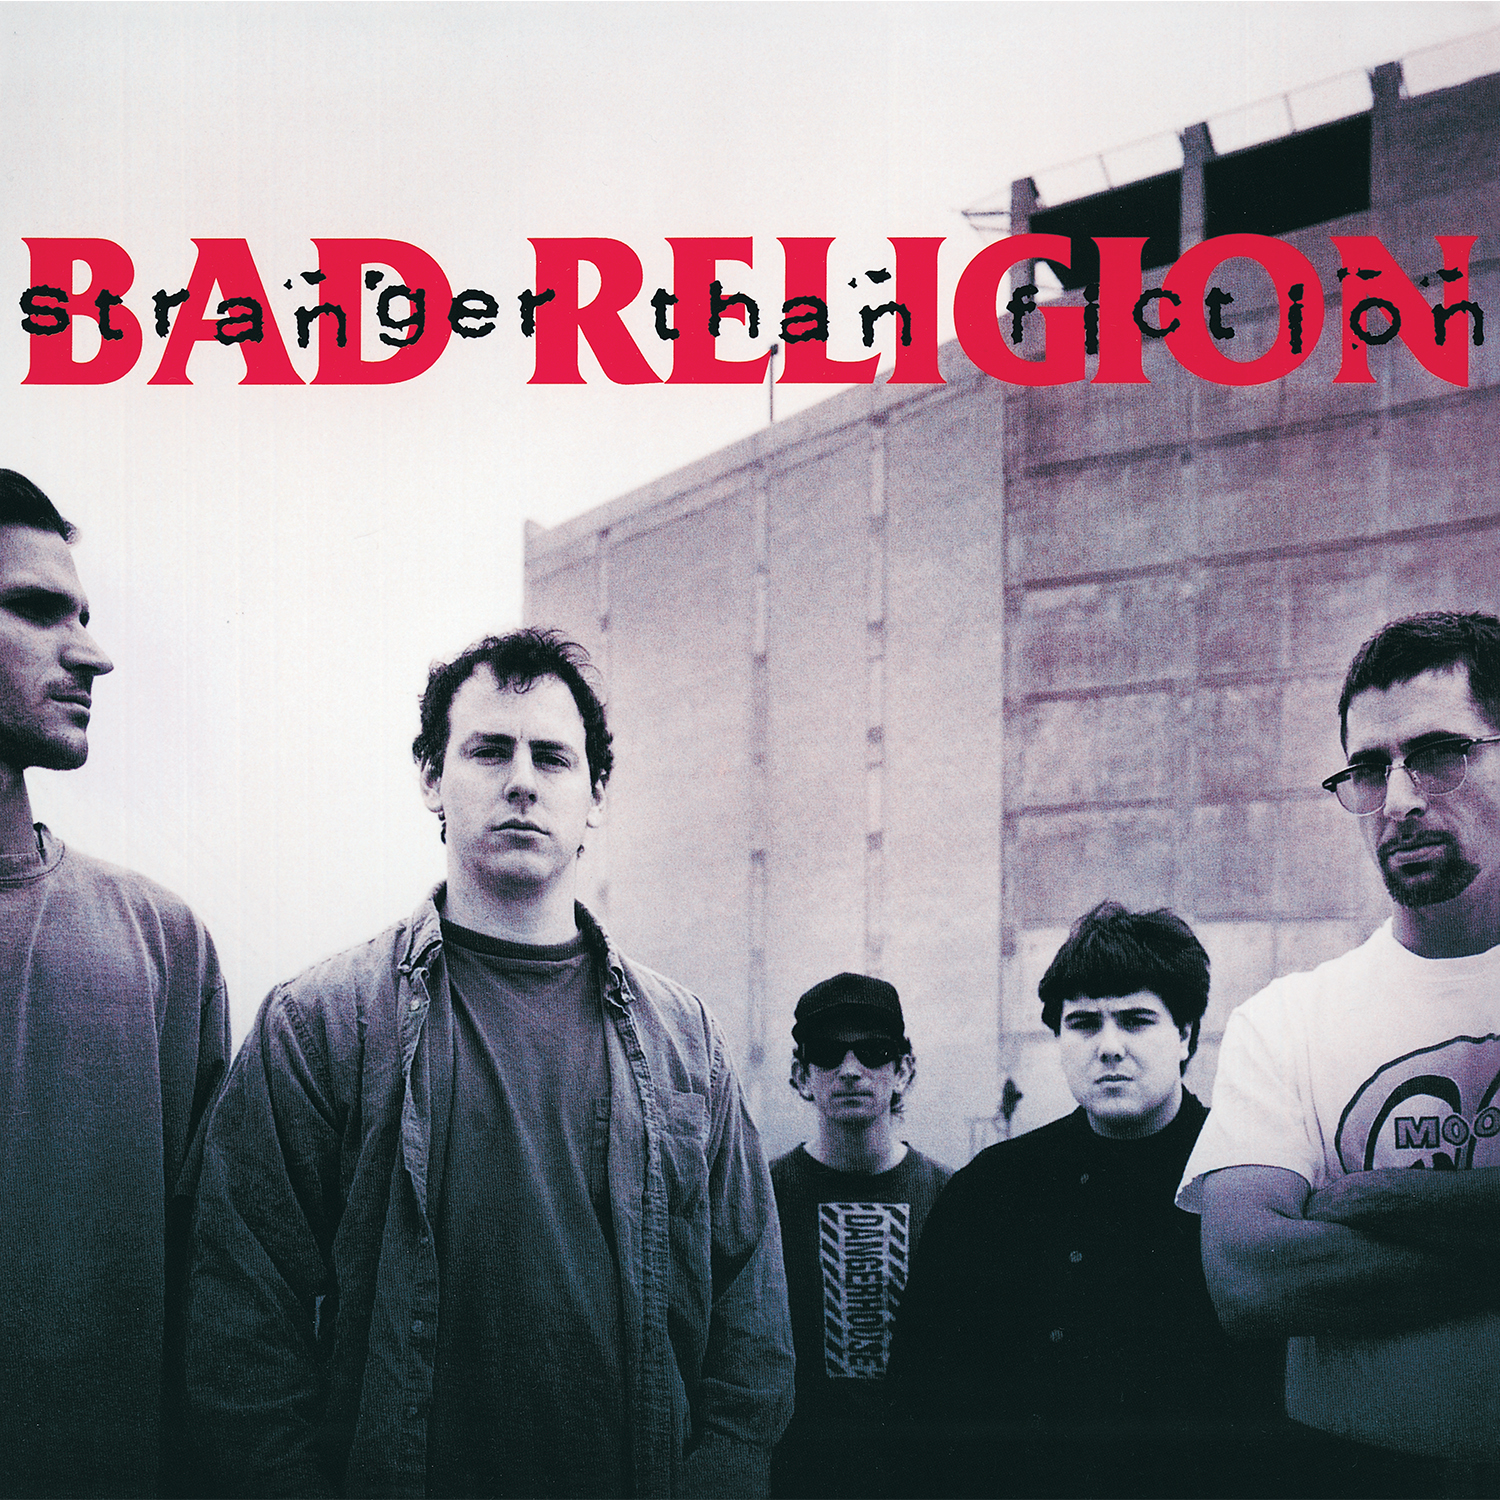 Bad Religion - Stranger Than Fiction (remastered) - CD